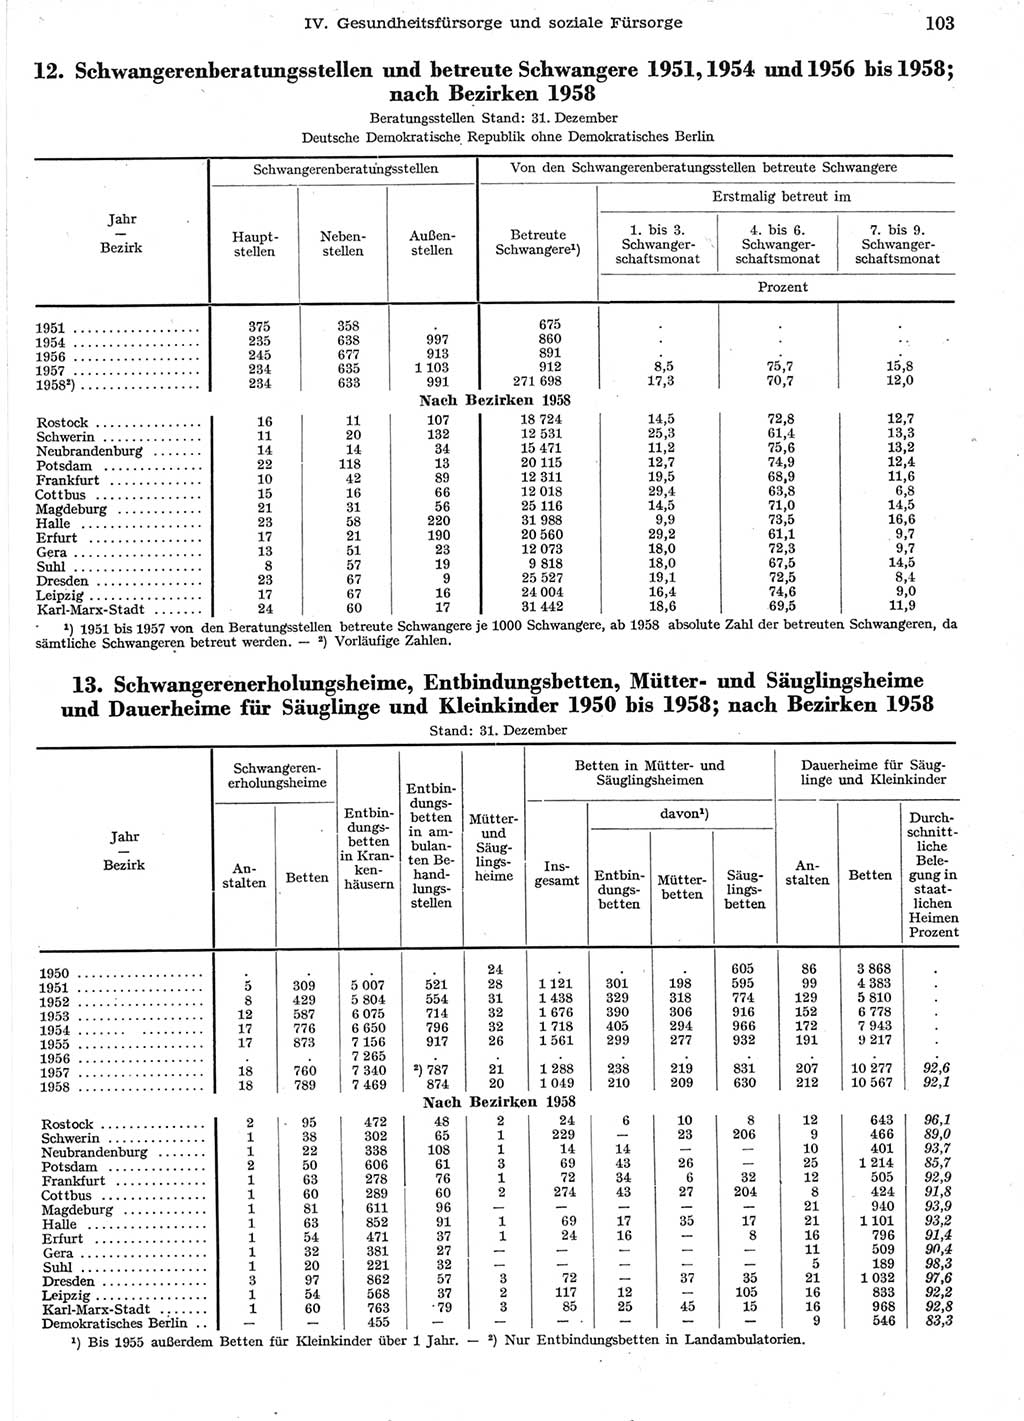 Statistisches Jahrbuch der Deutschen Demokratischen Republik (DDR) 1958, Seite 103 (Stat. Jb. DDR 1958, S. 103)